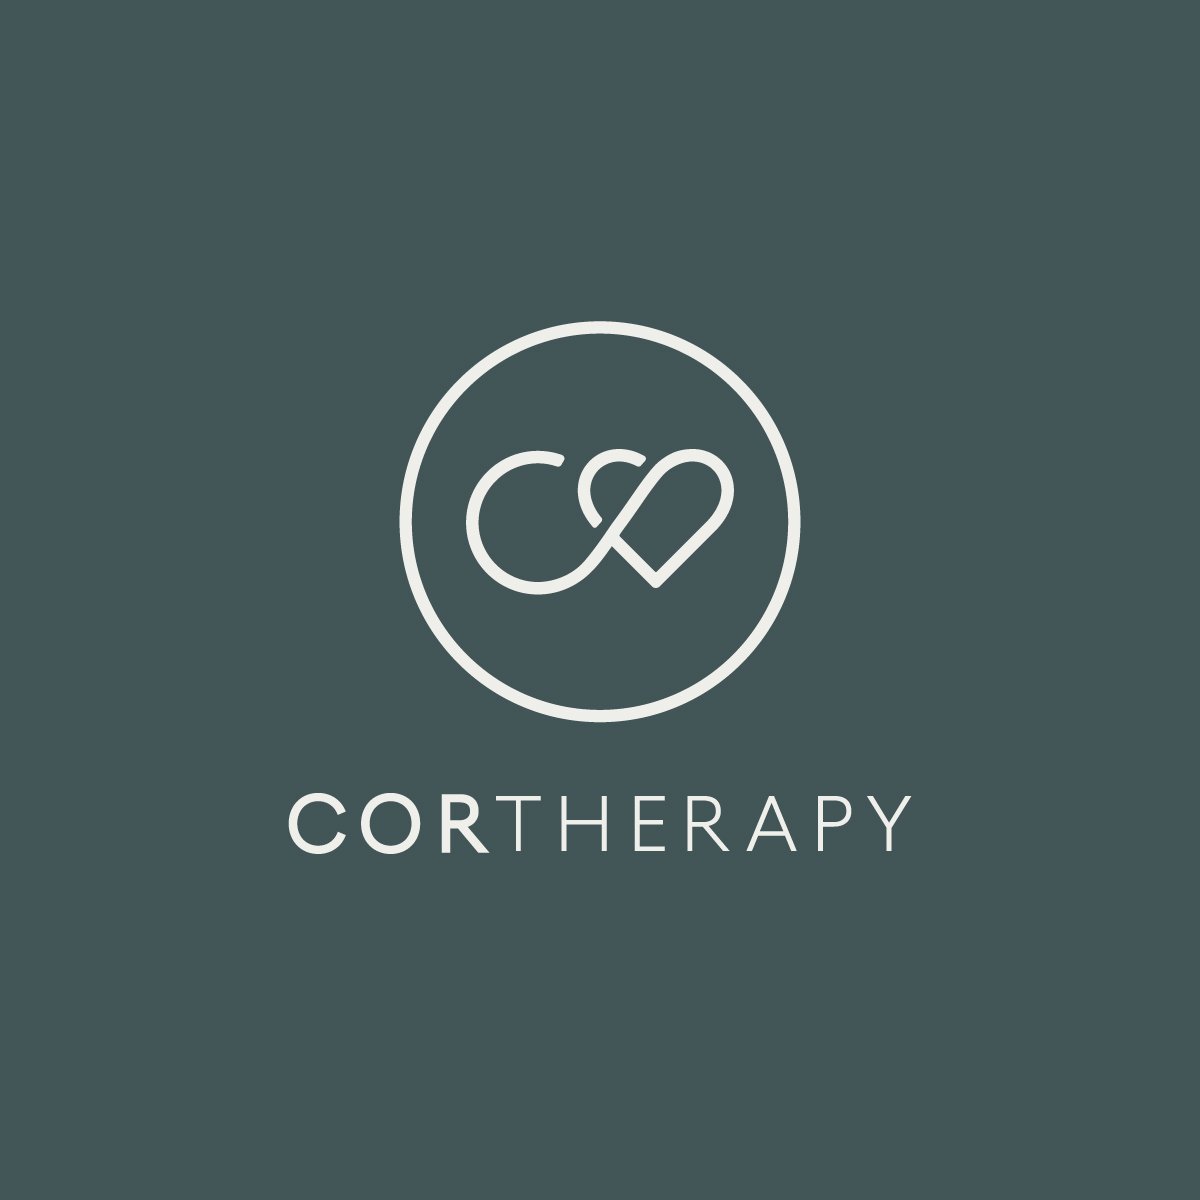 CORtherapy-logo-dark-background.jpg